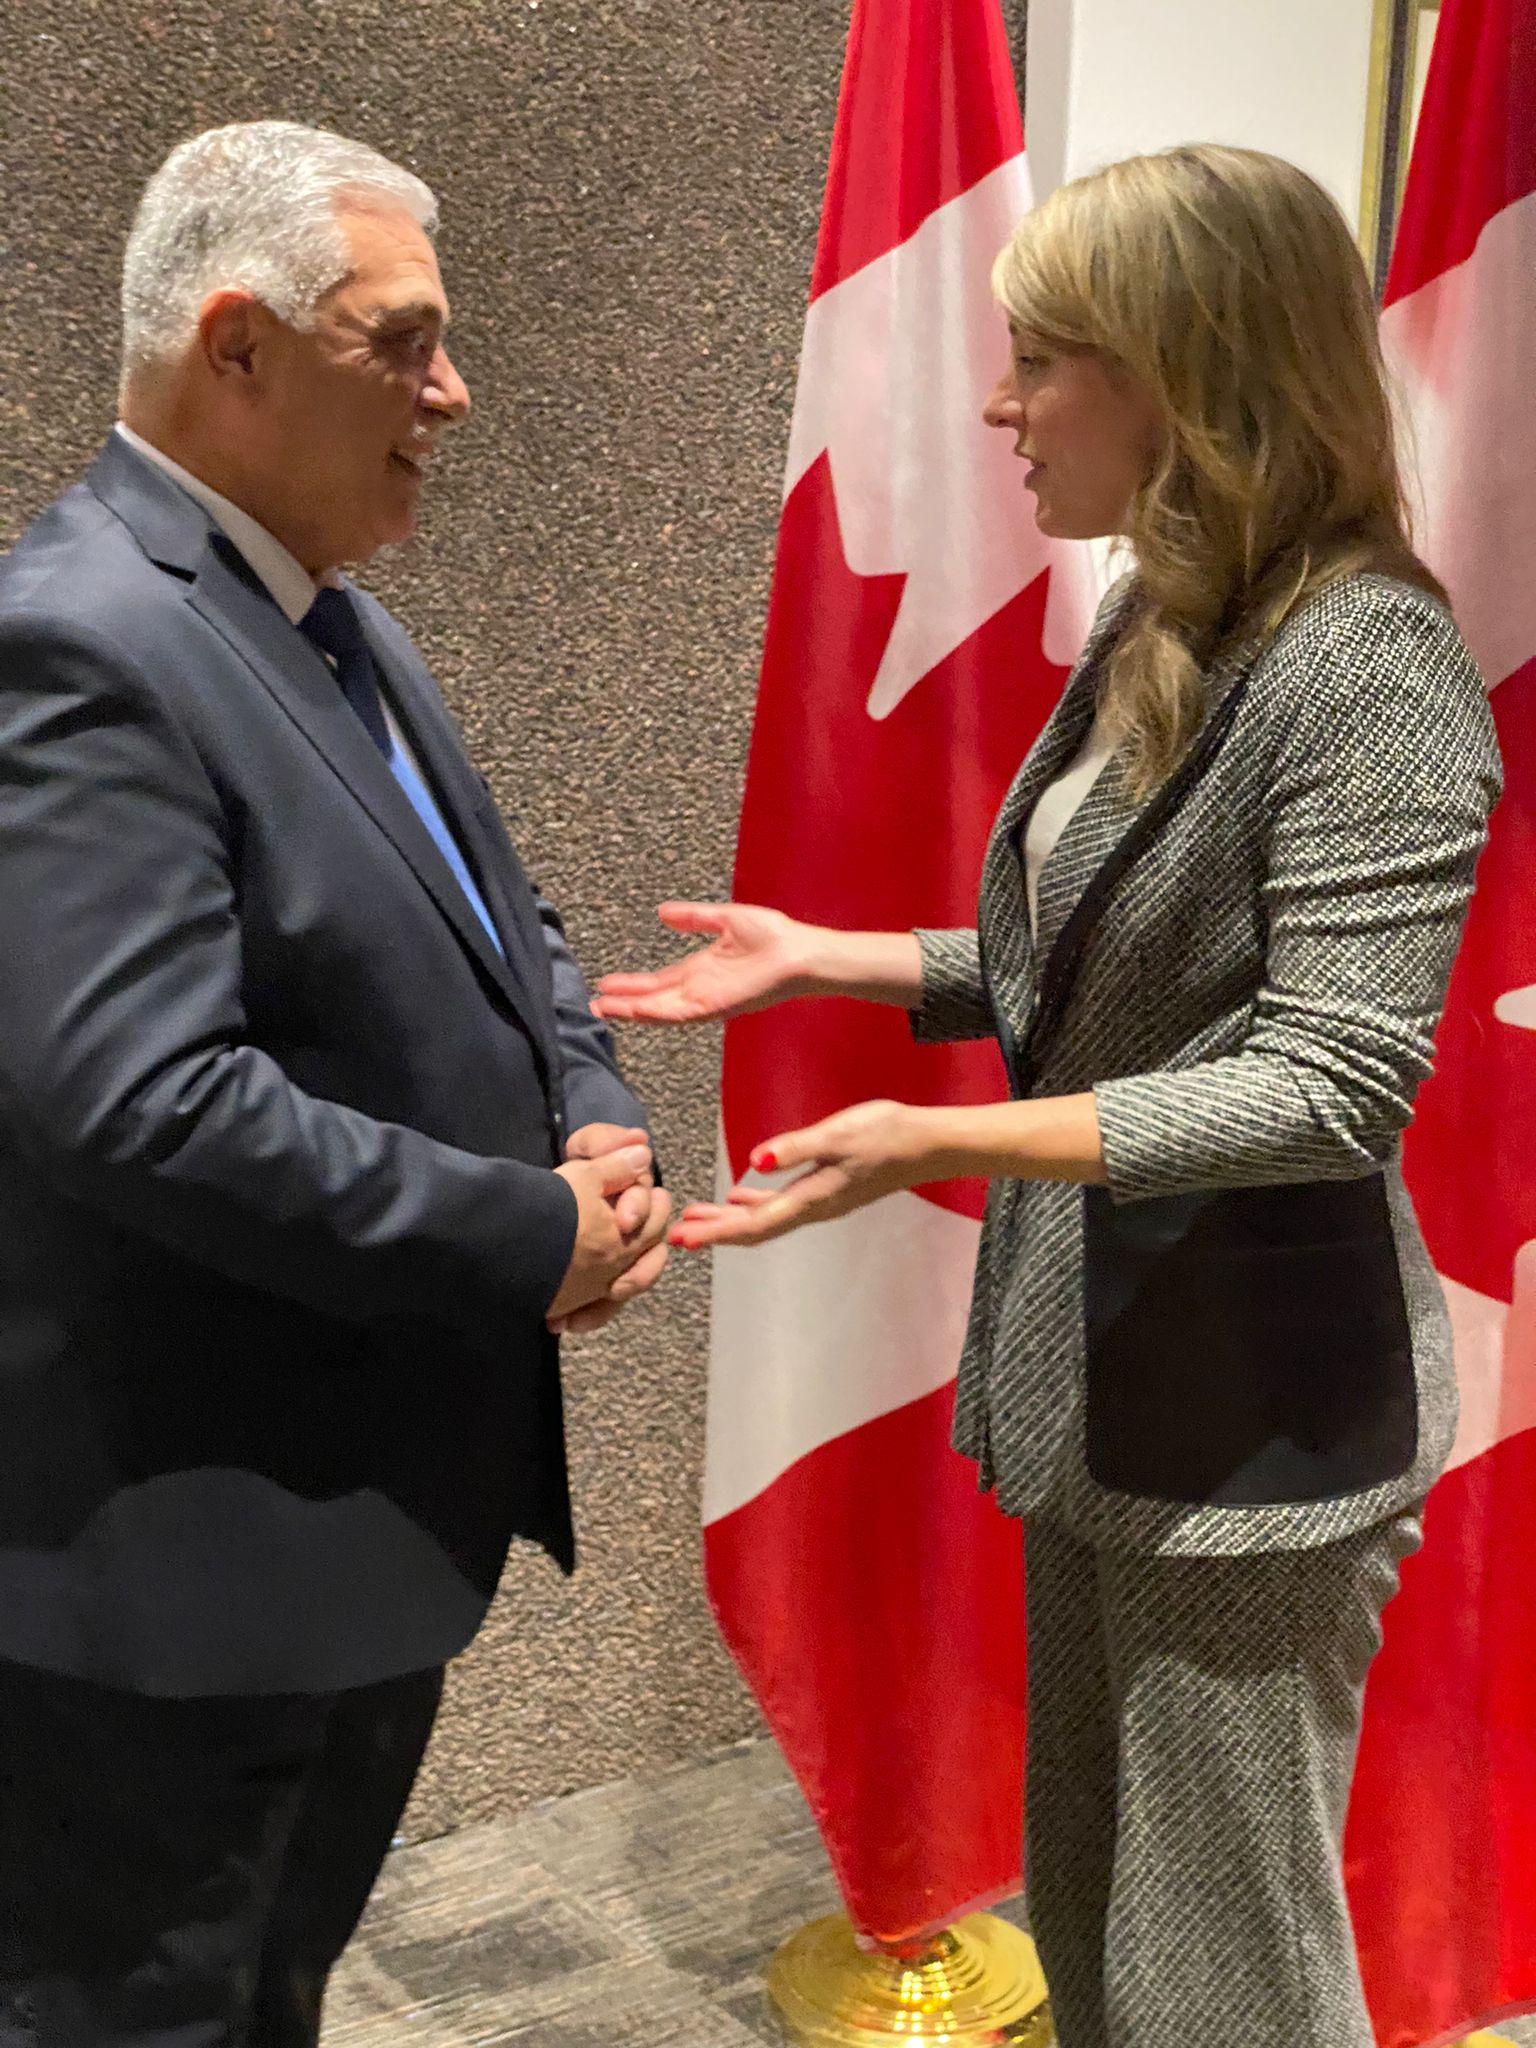    رئيس بعثة العراق الدبلوماسيّة  يلتقي وزير خارجيّة كندا  ميلاني جولي